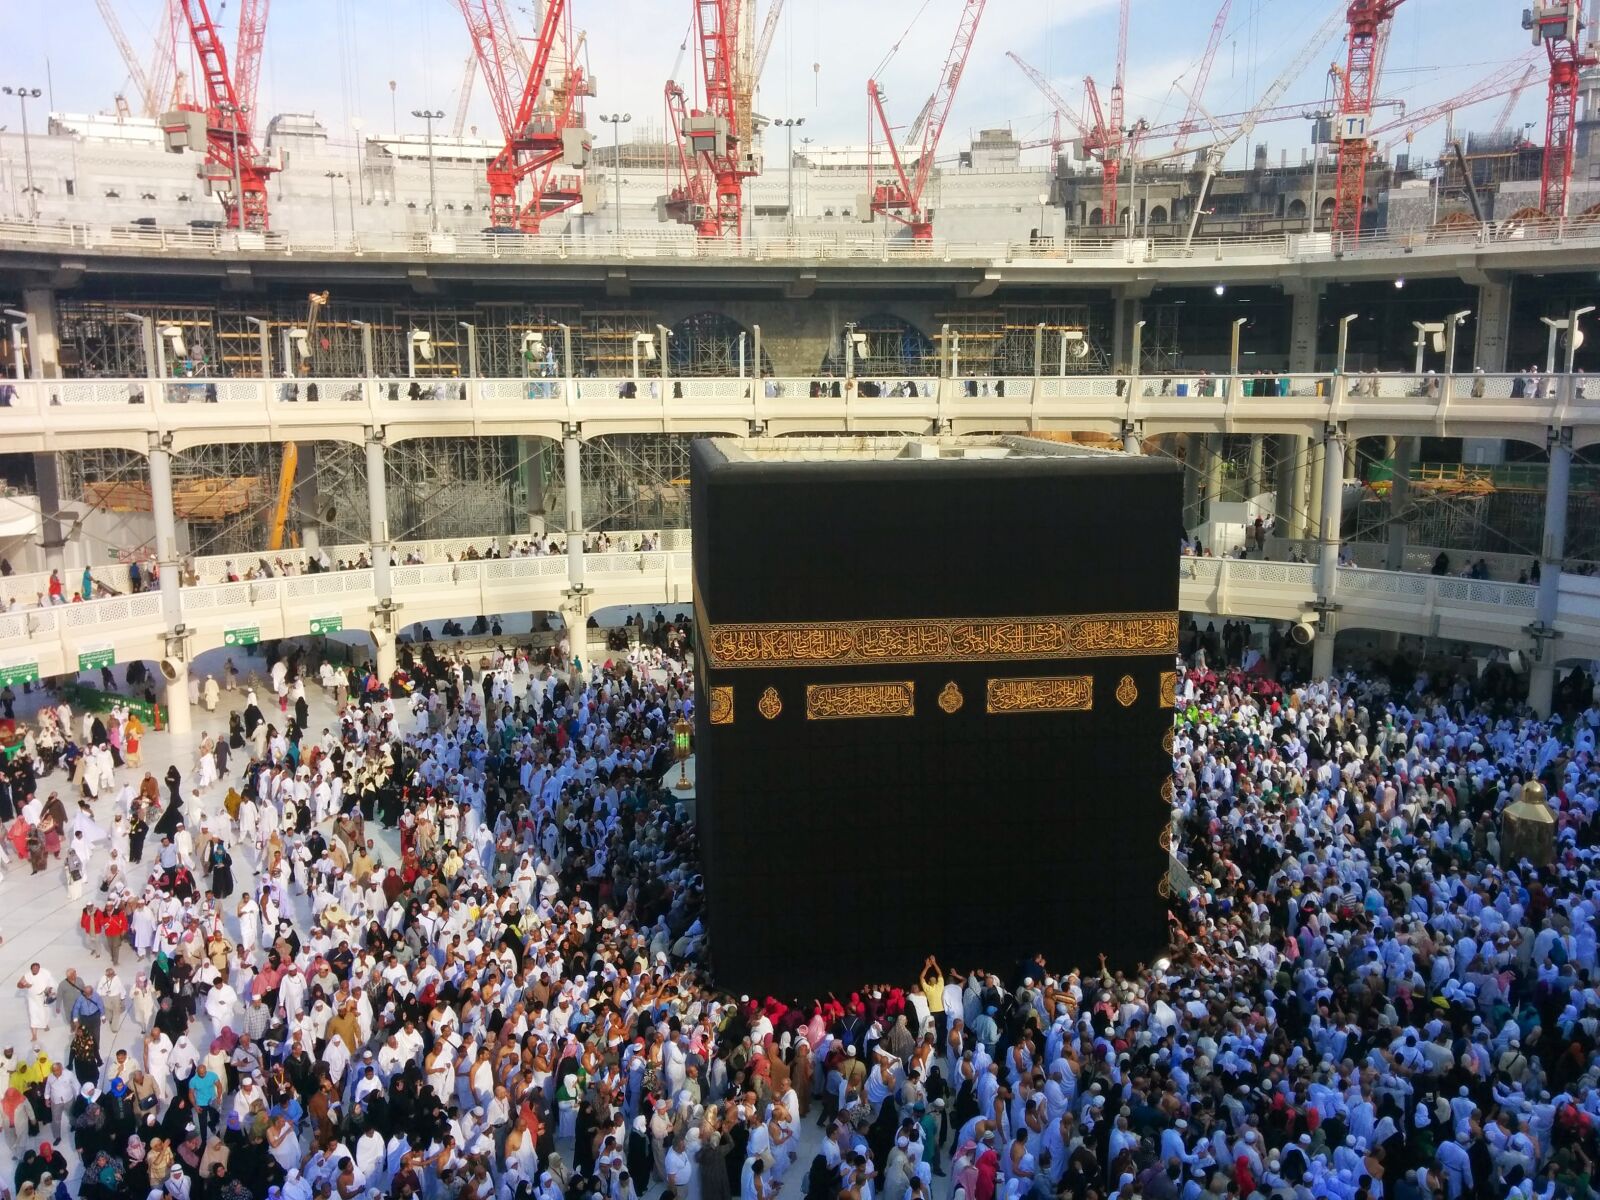 LG Nexus 5 sample photo. Makkah, islam, muslim photography